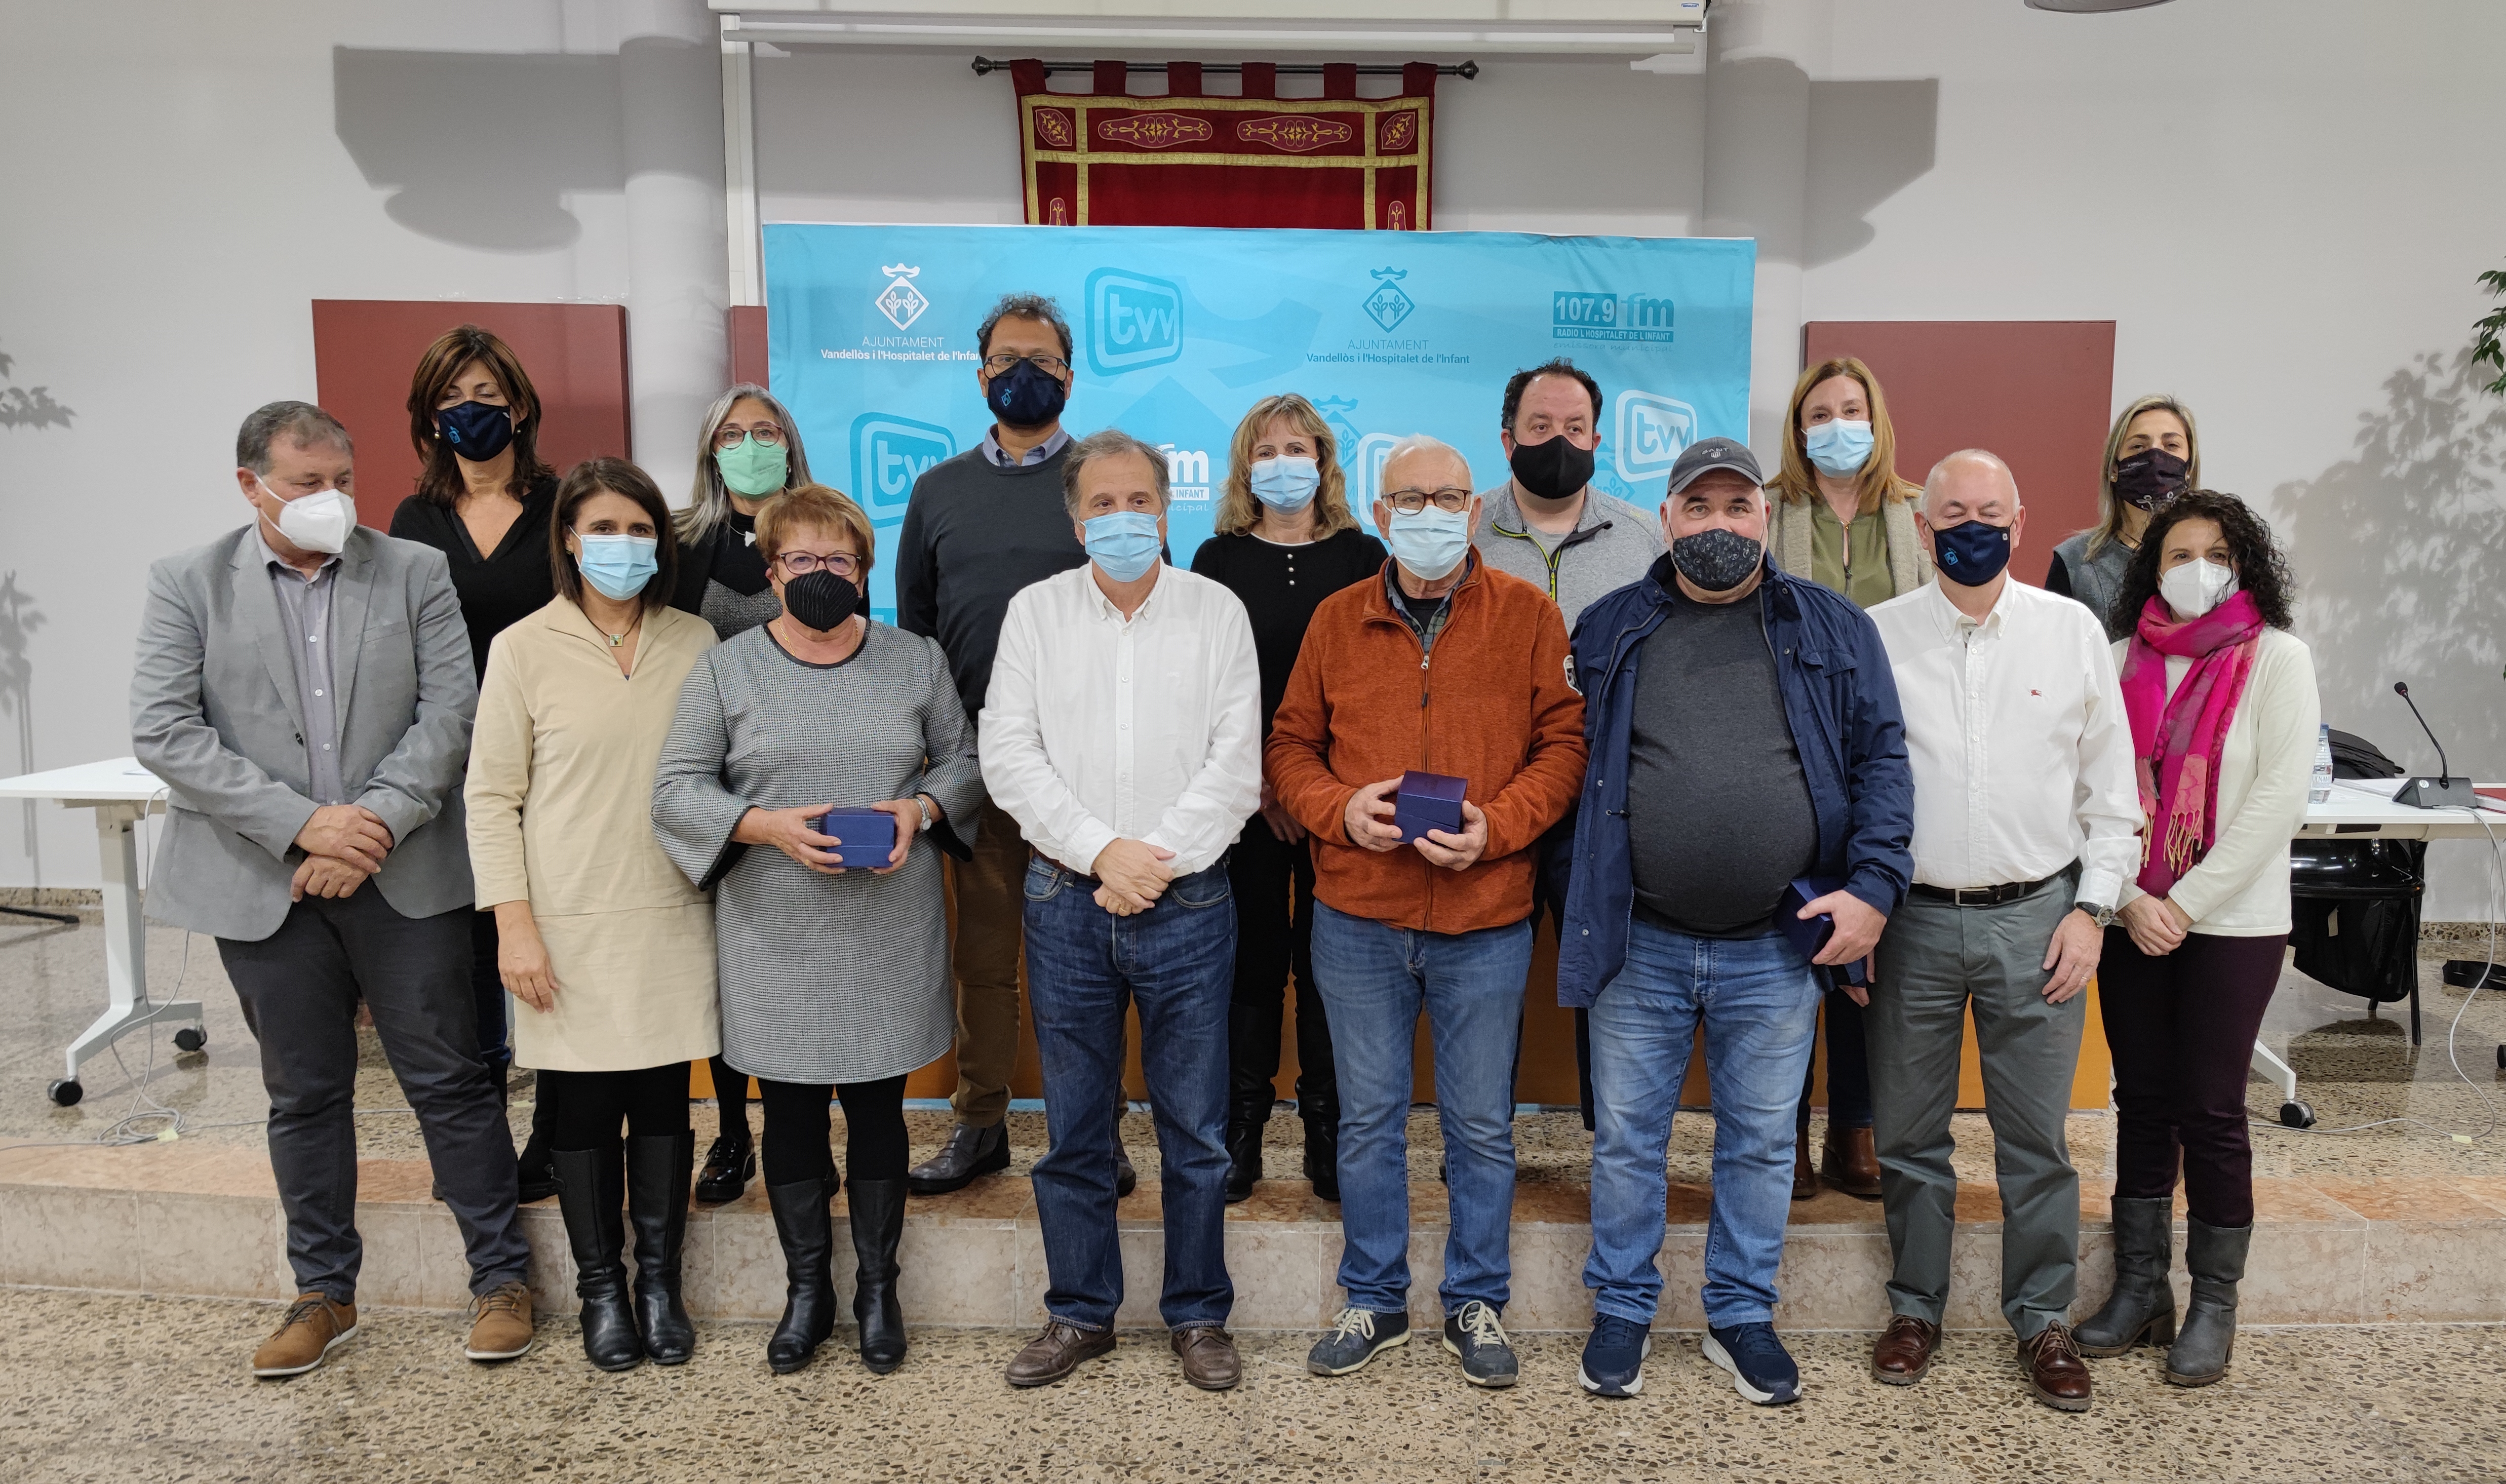 L’Ajuntament de Vandellòs i l’Hospitalet de l’Infant ret homenatge a cinc empleats municipals, amb motiu de la seva jubilació